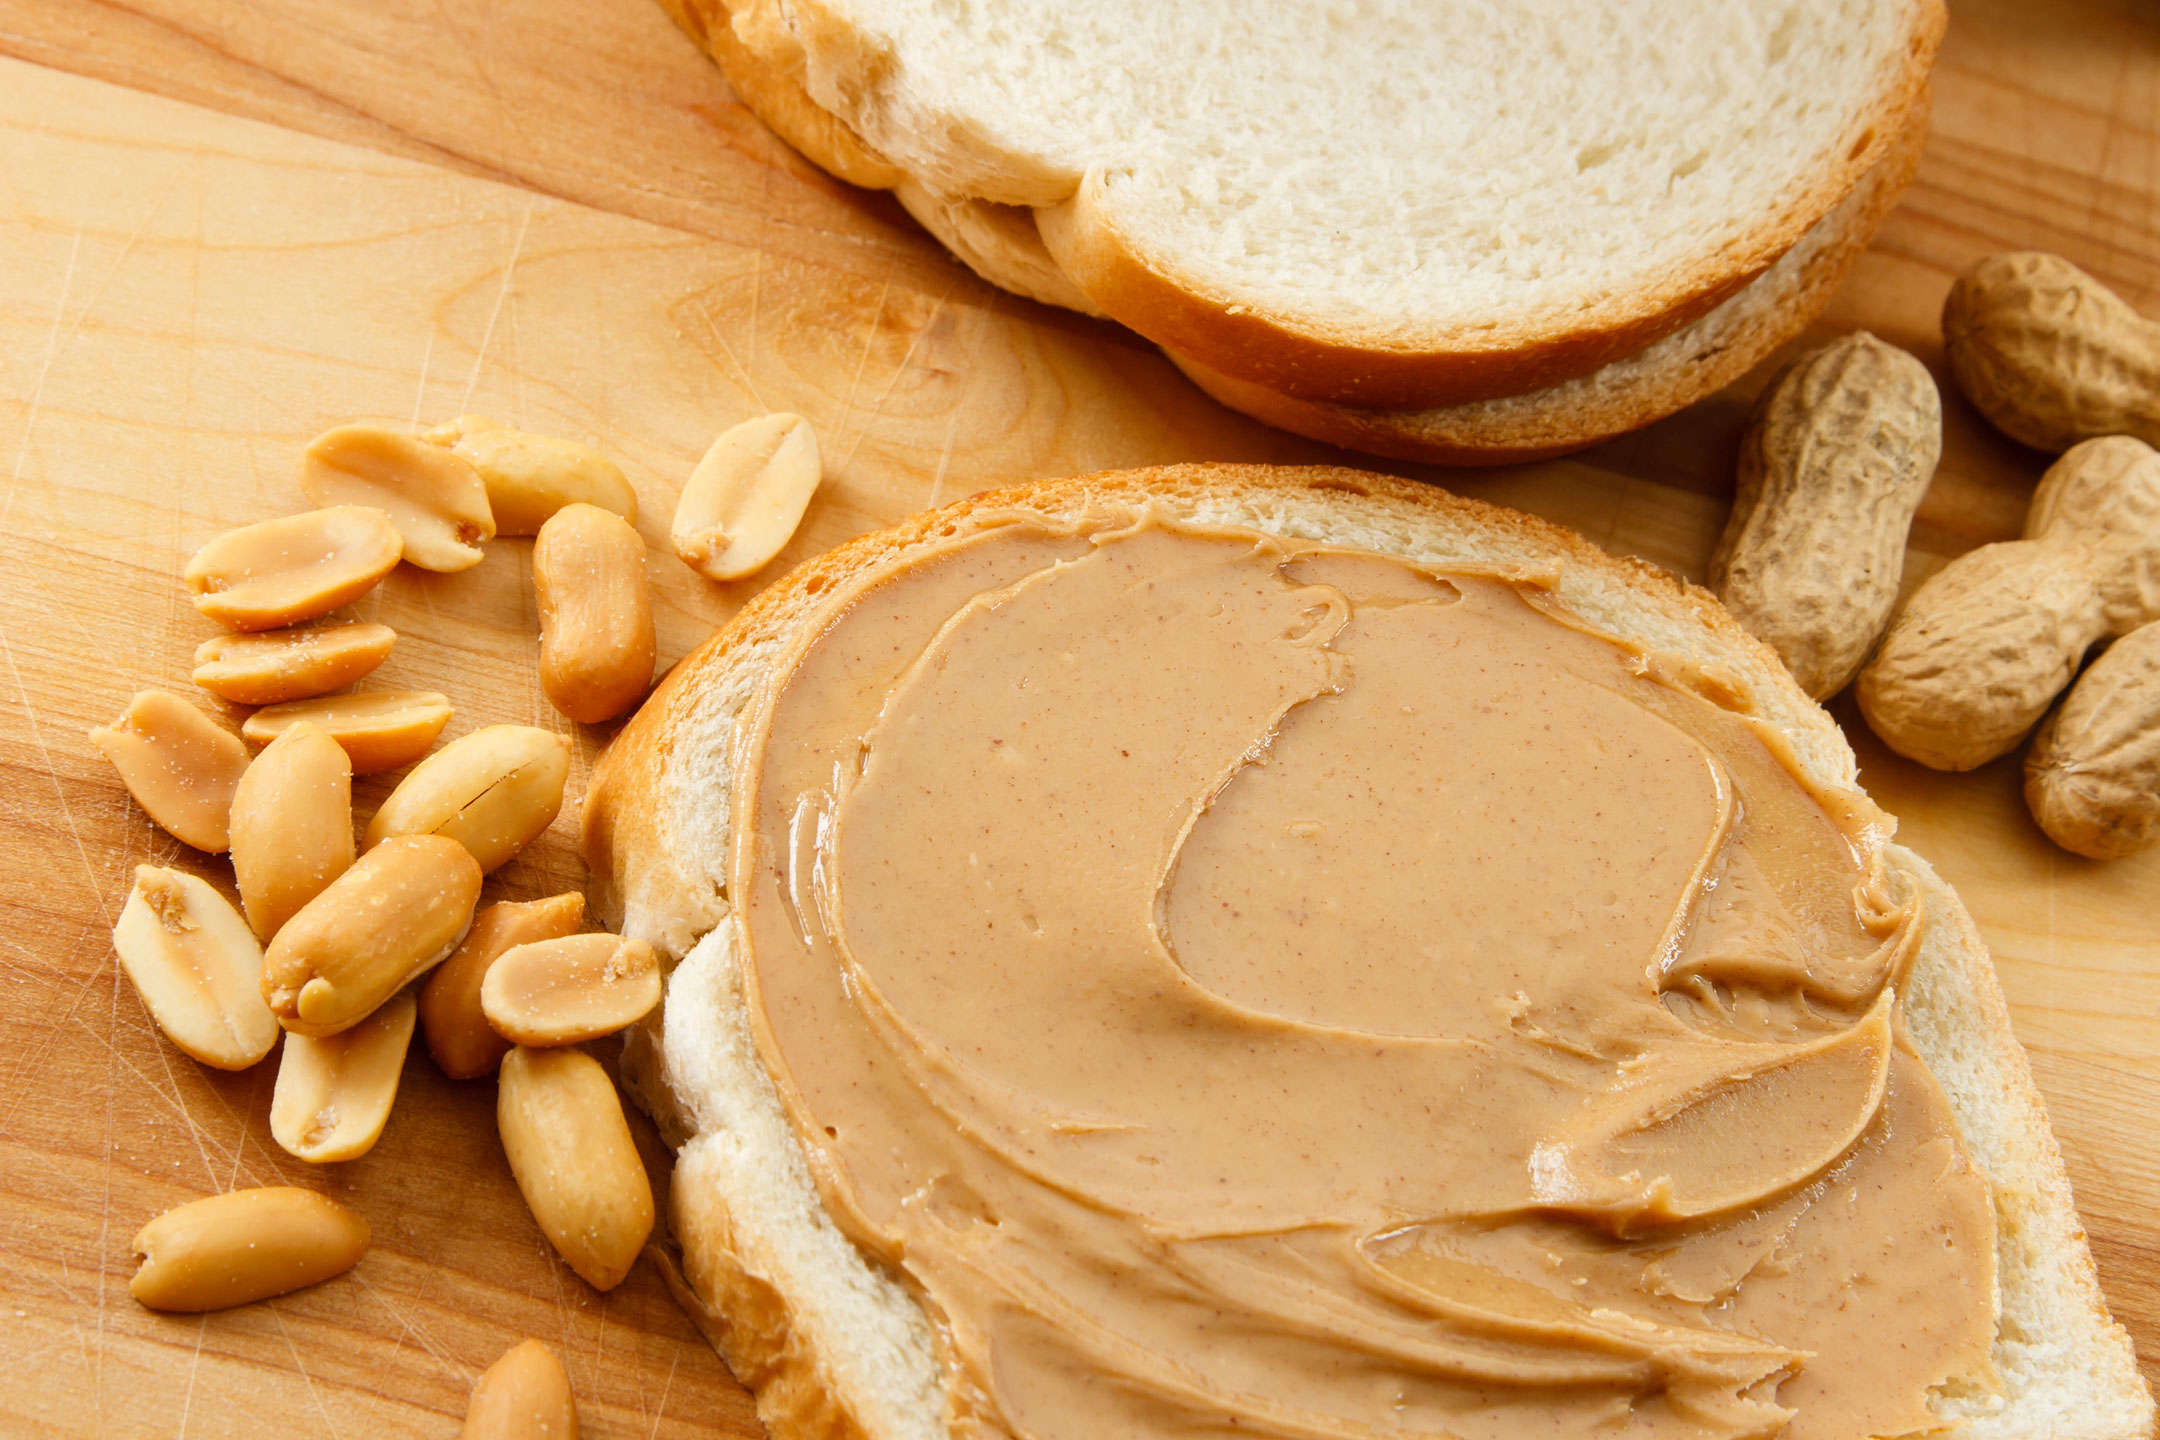 Peanut-butter-on-bread2160